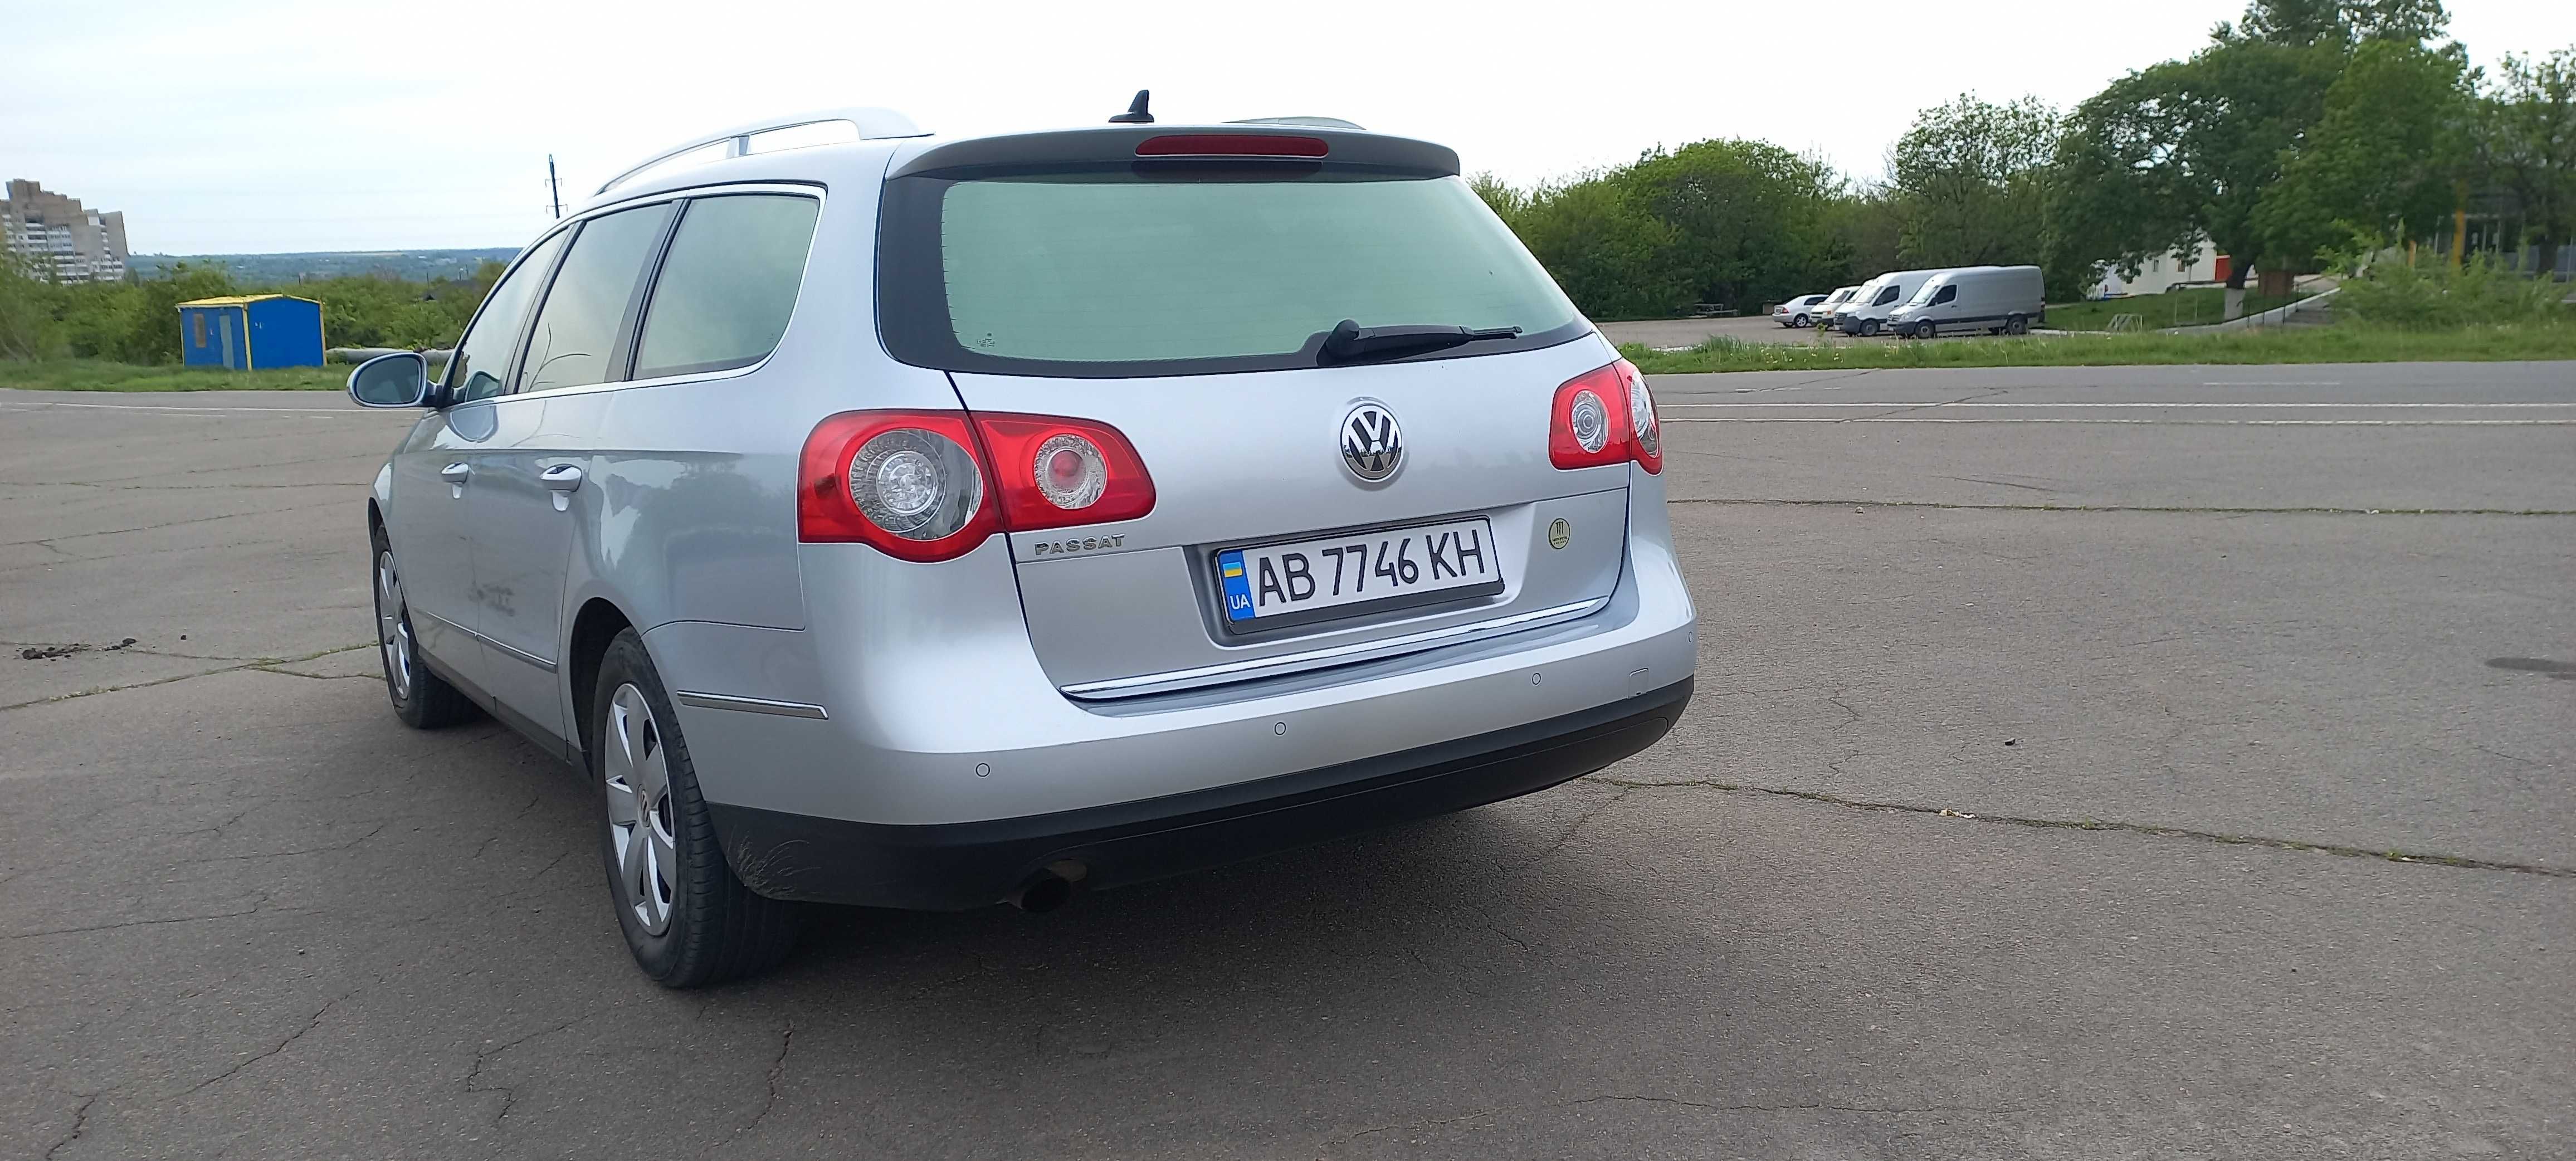 Продам Volkswagen passat B6. 2009р.